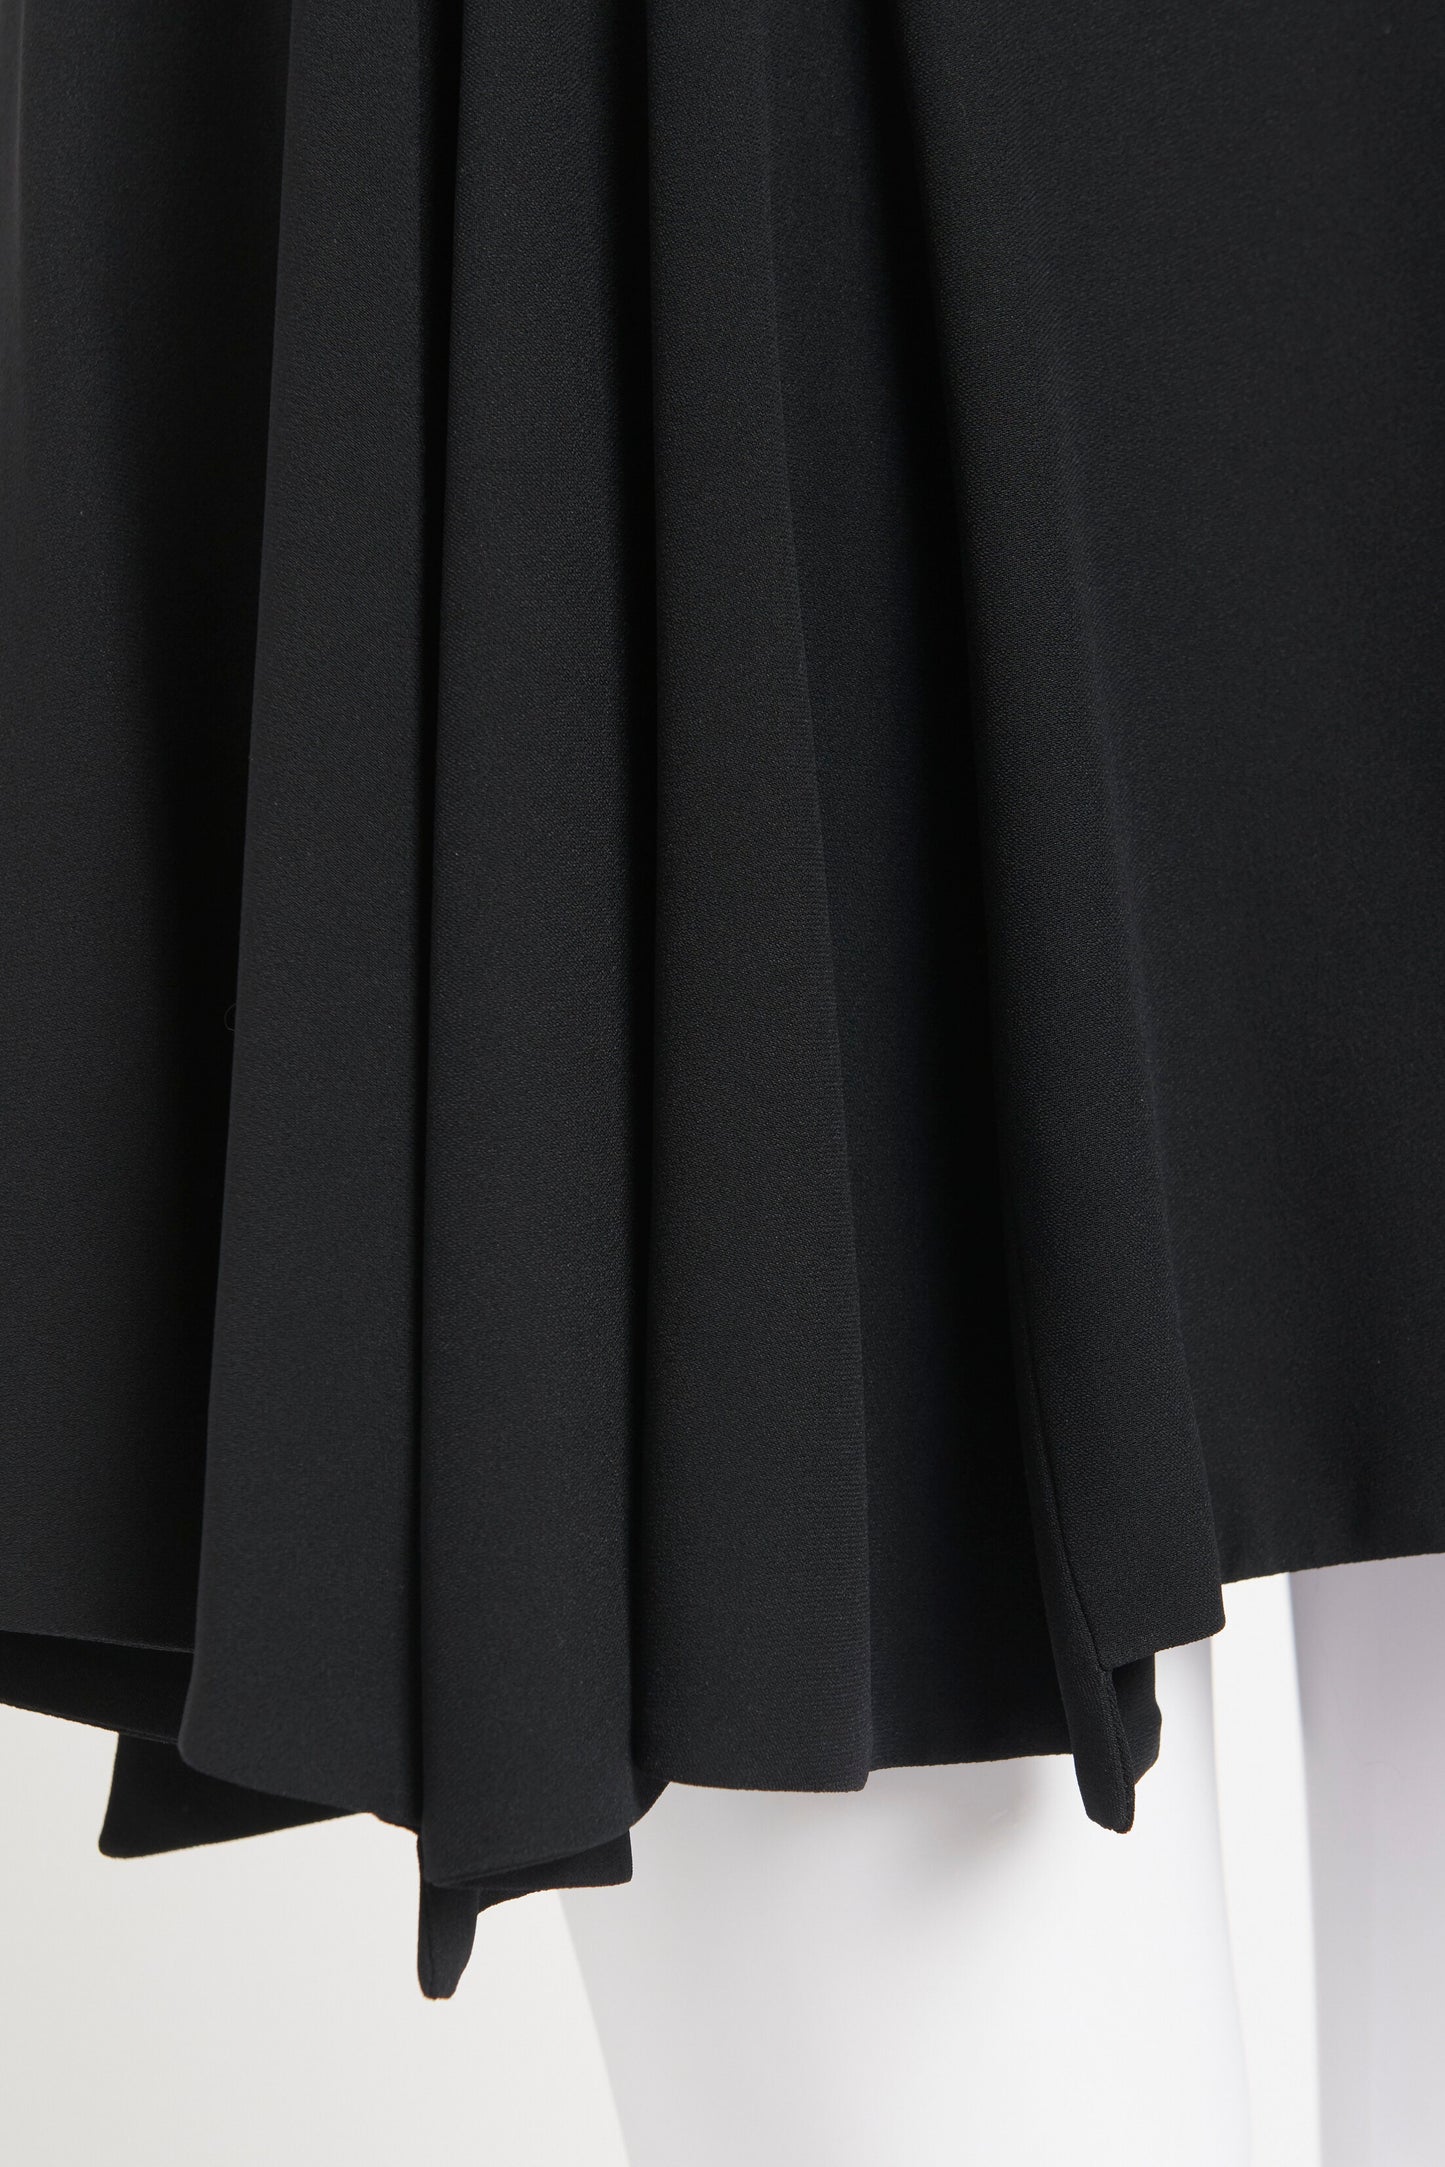 Black Acetate Blend Preowned Skater Dress